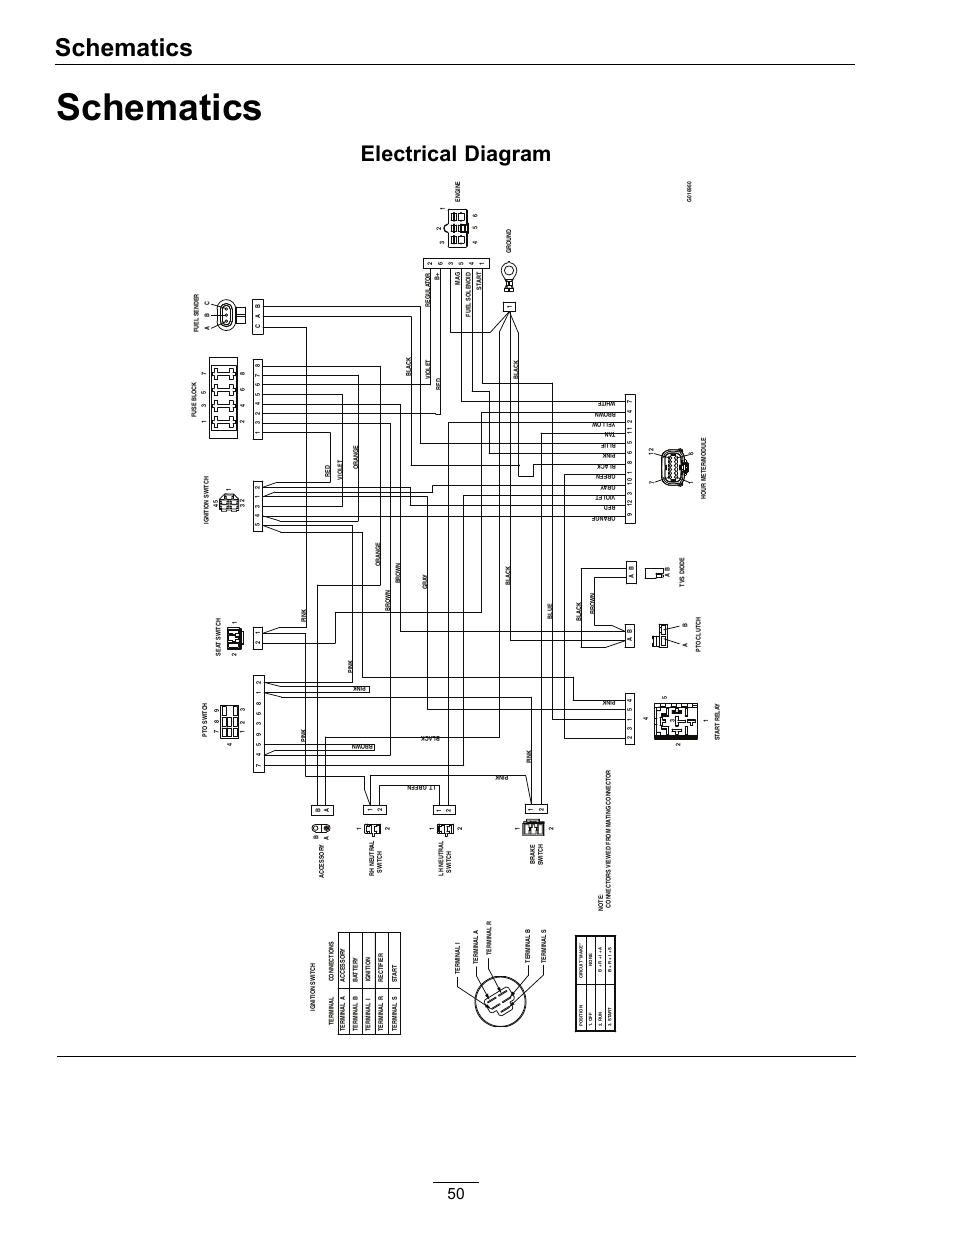 Bcm 2002 Oldsmobile Alero Wiring Diagram